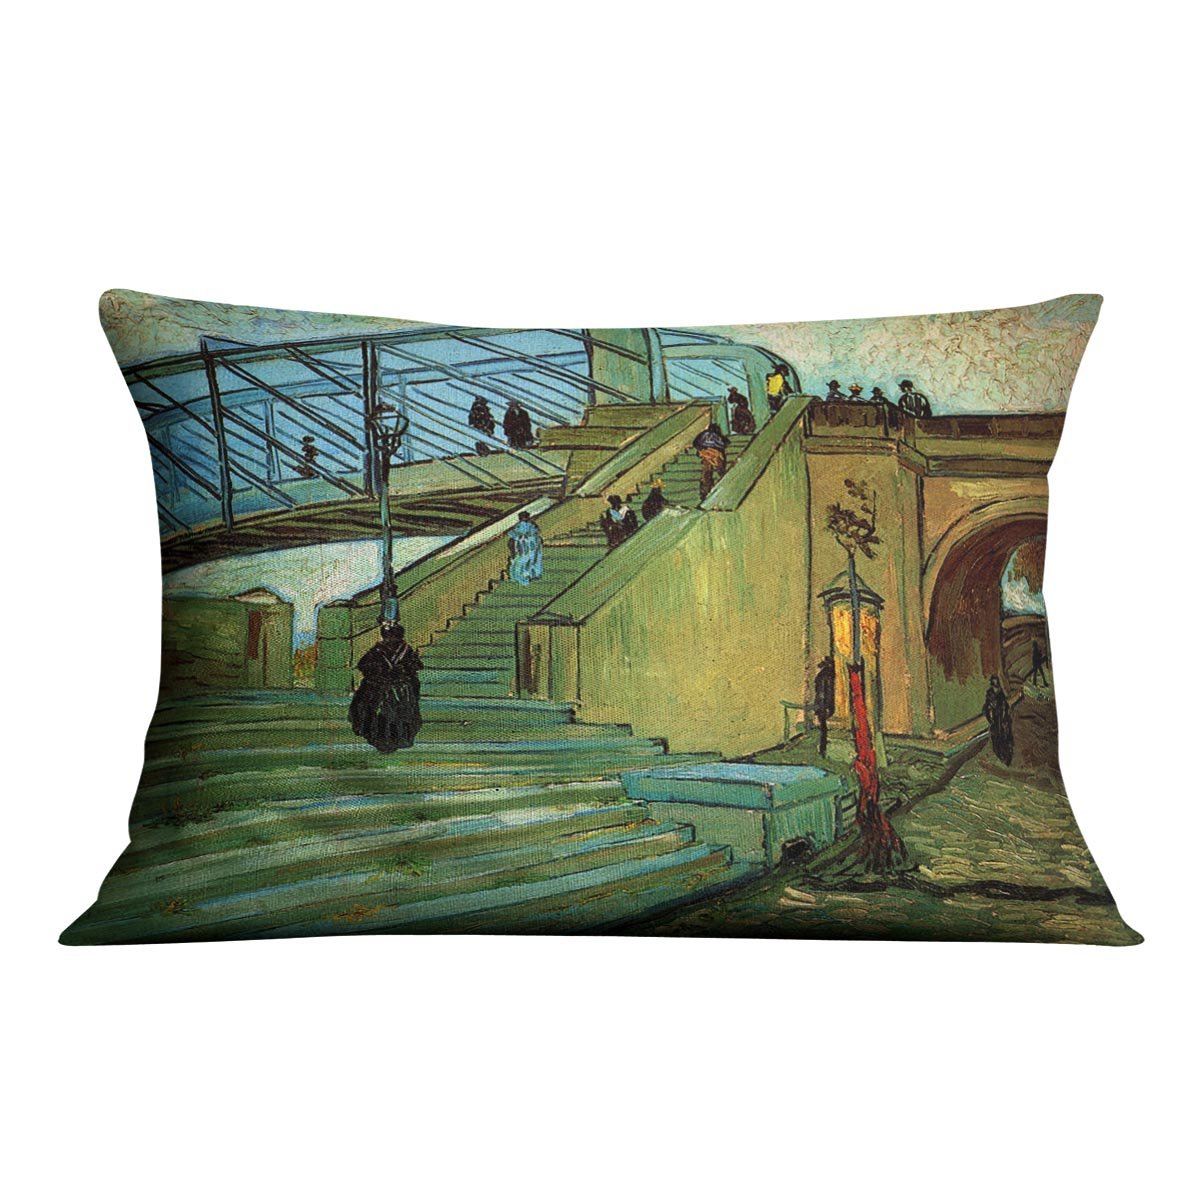 The Trinquetaille Bridge by Van Gogh Throw Pillow